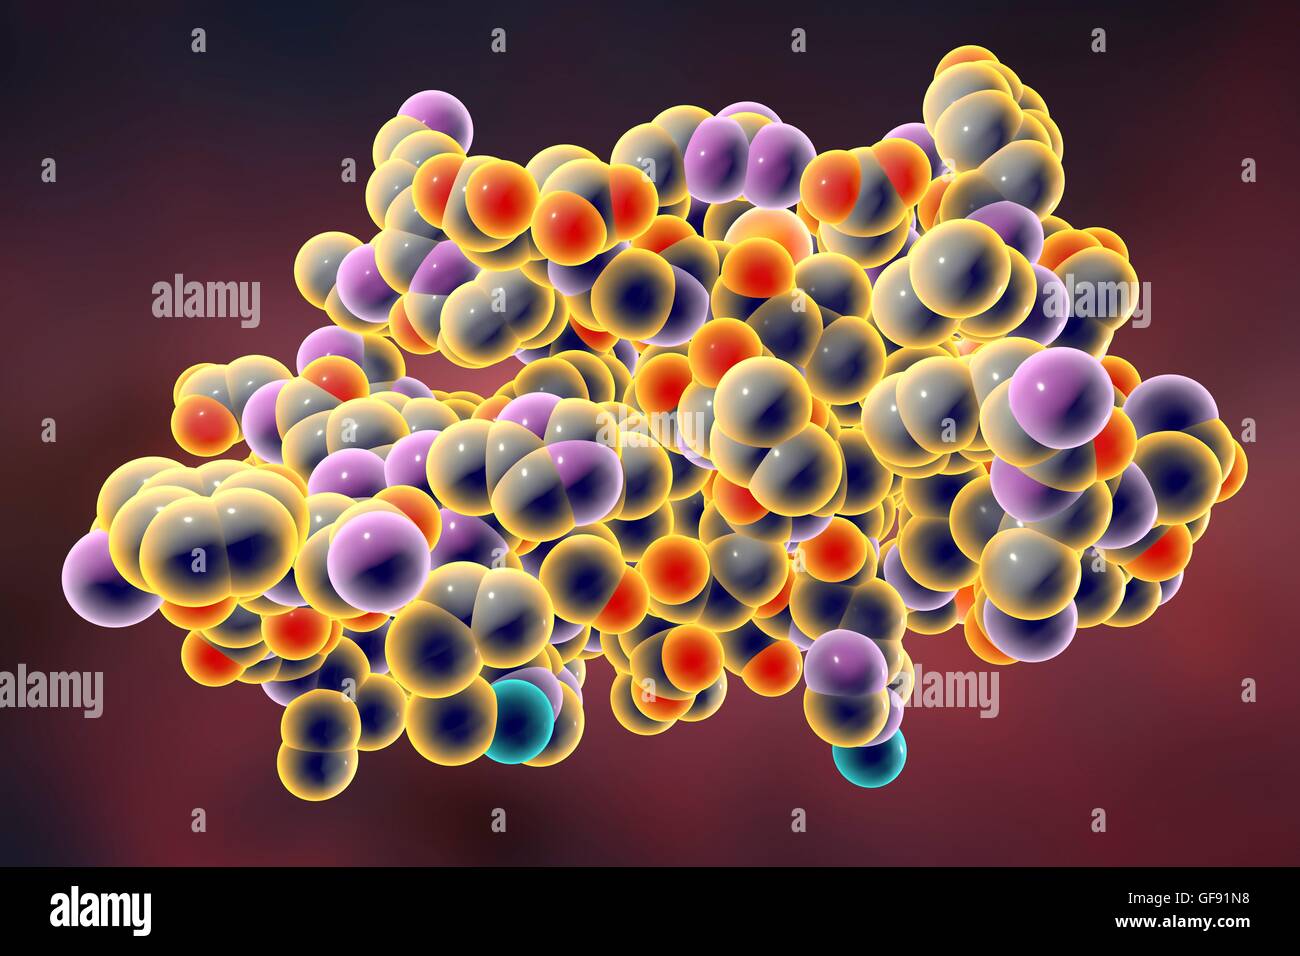 Molecola di insulina. Modello di computer che mostra la struttura di una molecola di ormone insulina. L'insulina svolge un ruolo importante nel livello di zucchero nel sangue il regolamento. L'insulina viene rilasciata dal pancreas quando i livelli di zucchero nel sangue sono elevati, per esempio dopo un pasto, promp Foto Stock